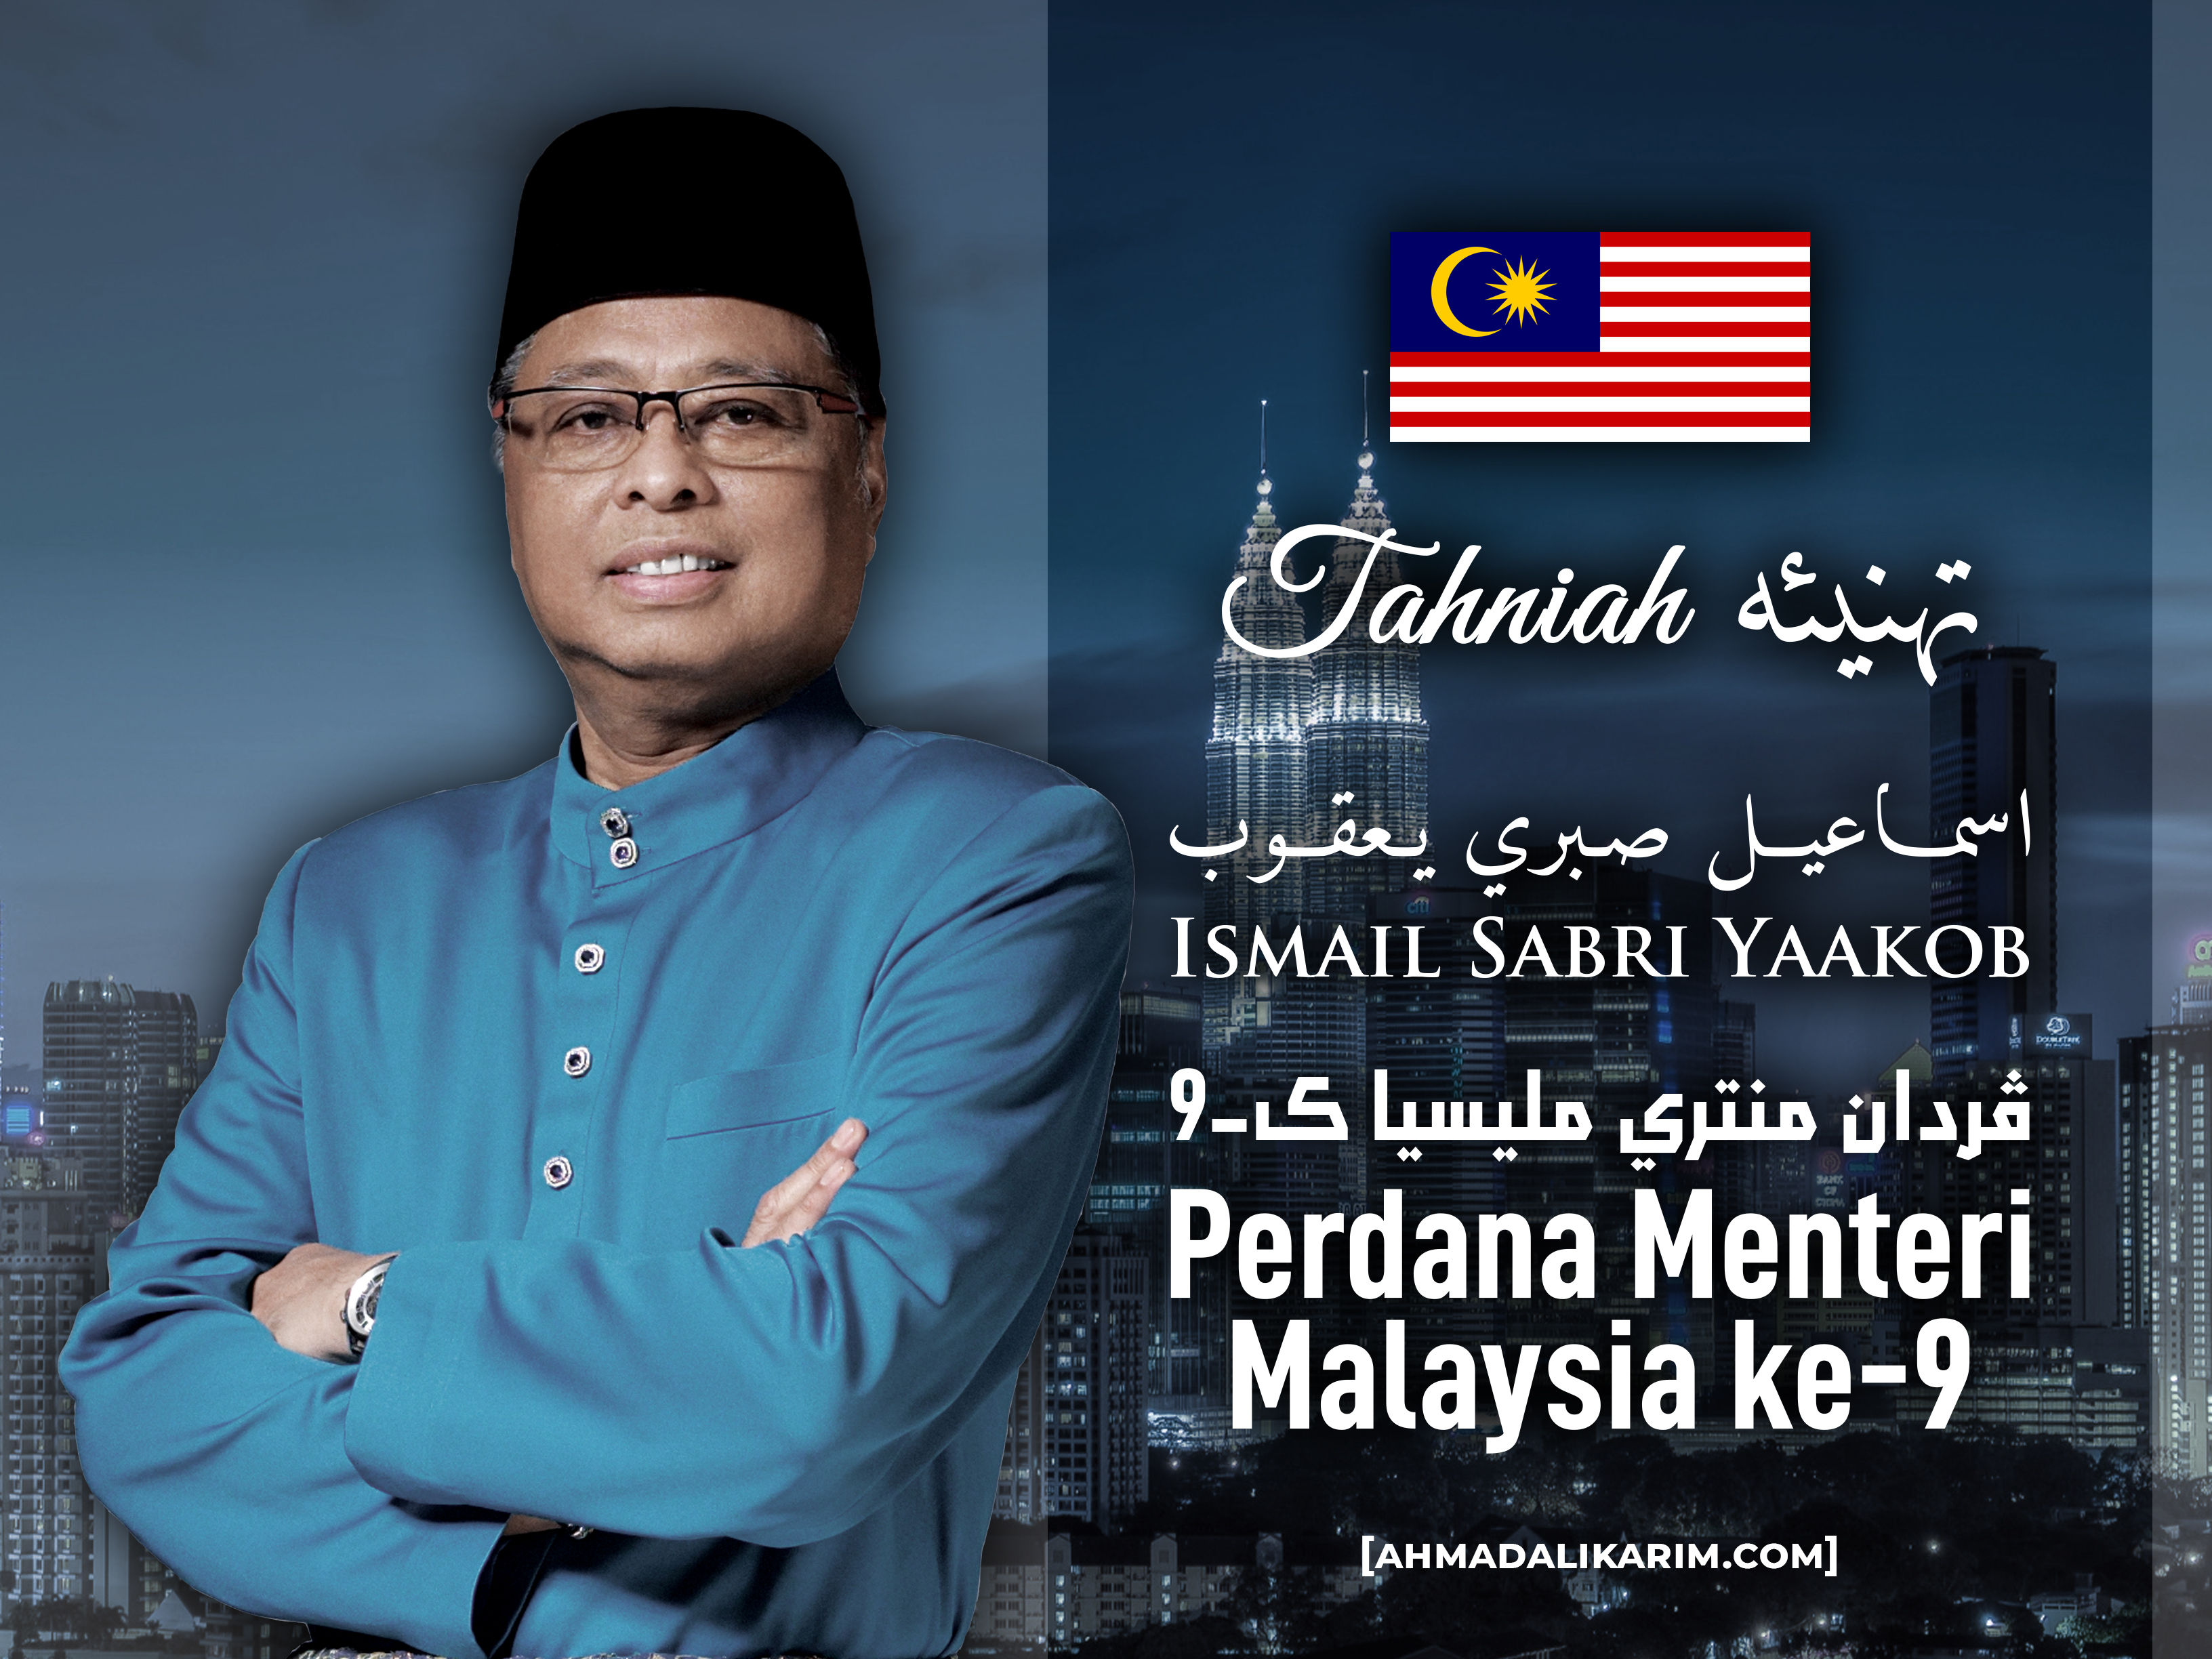 Ke perdana menteri 9 malaysia